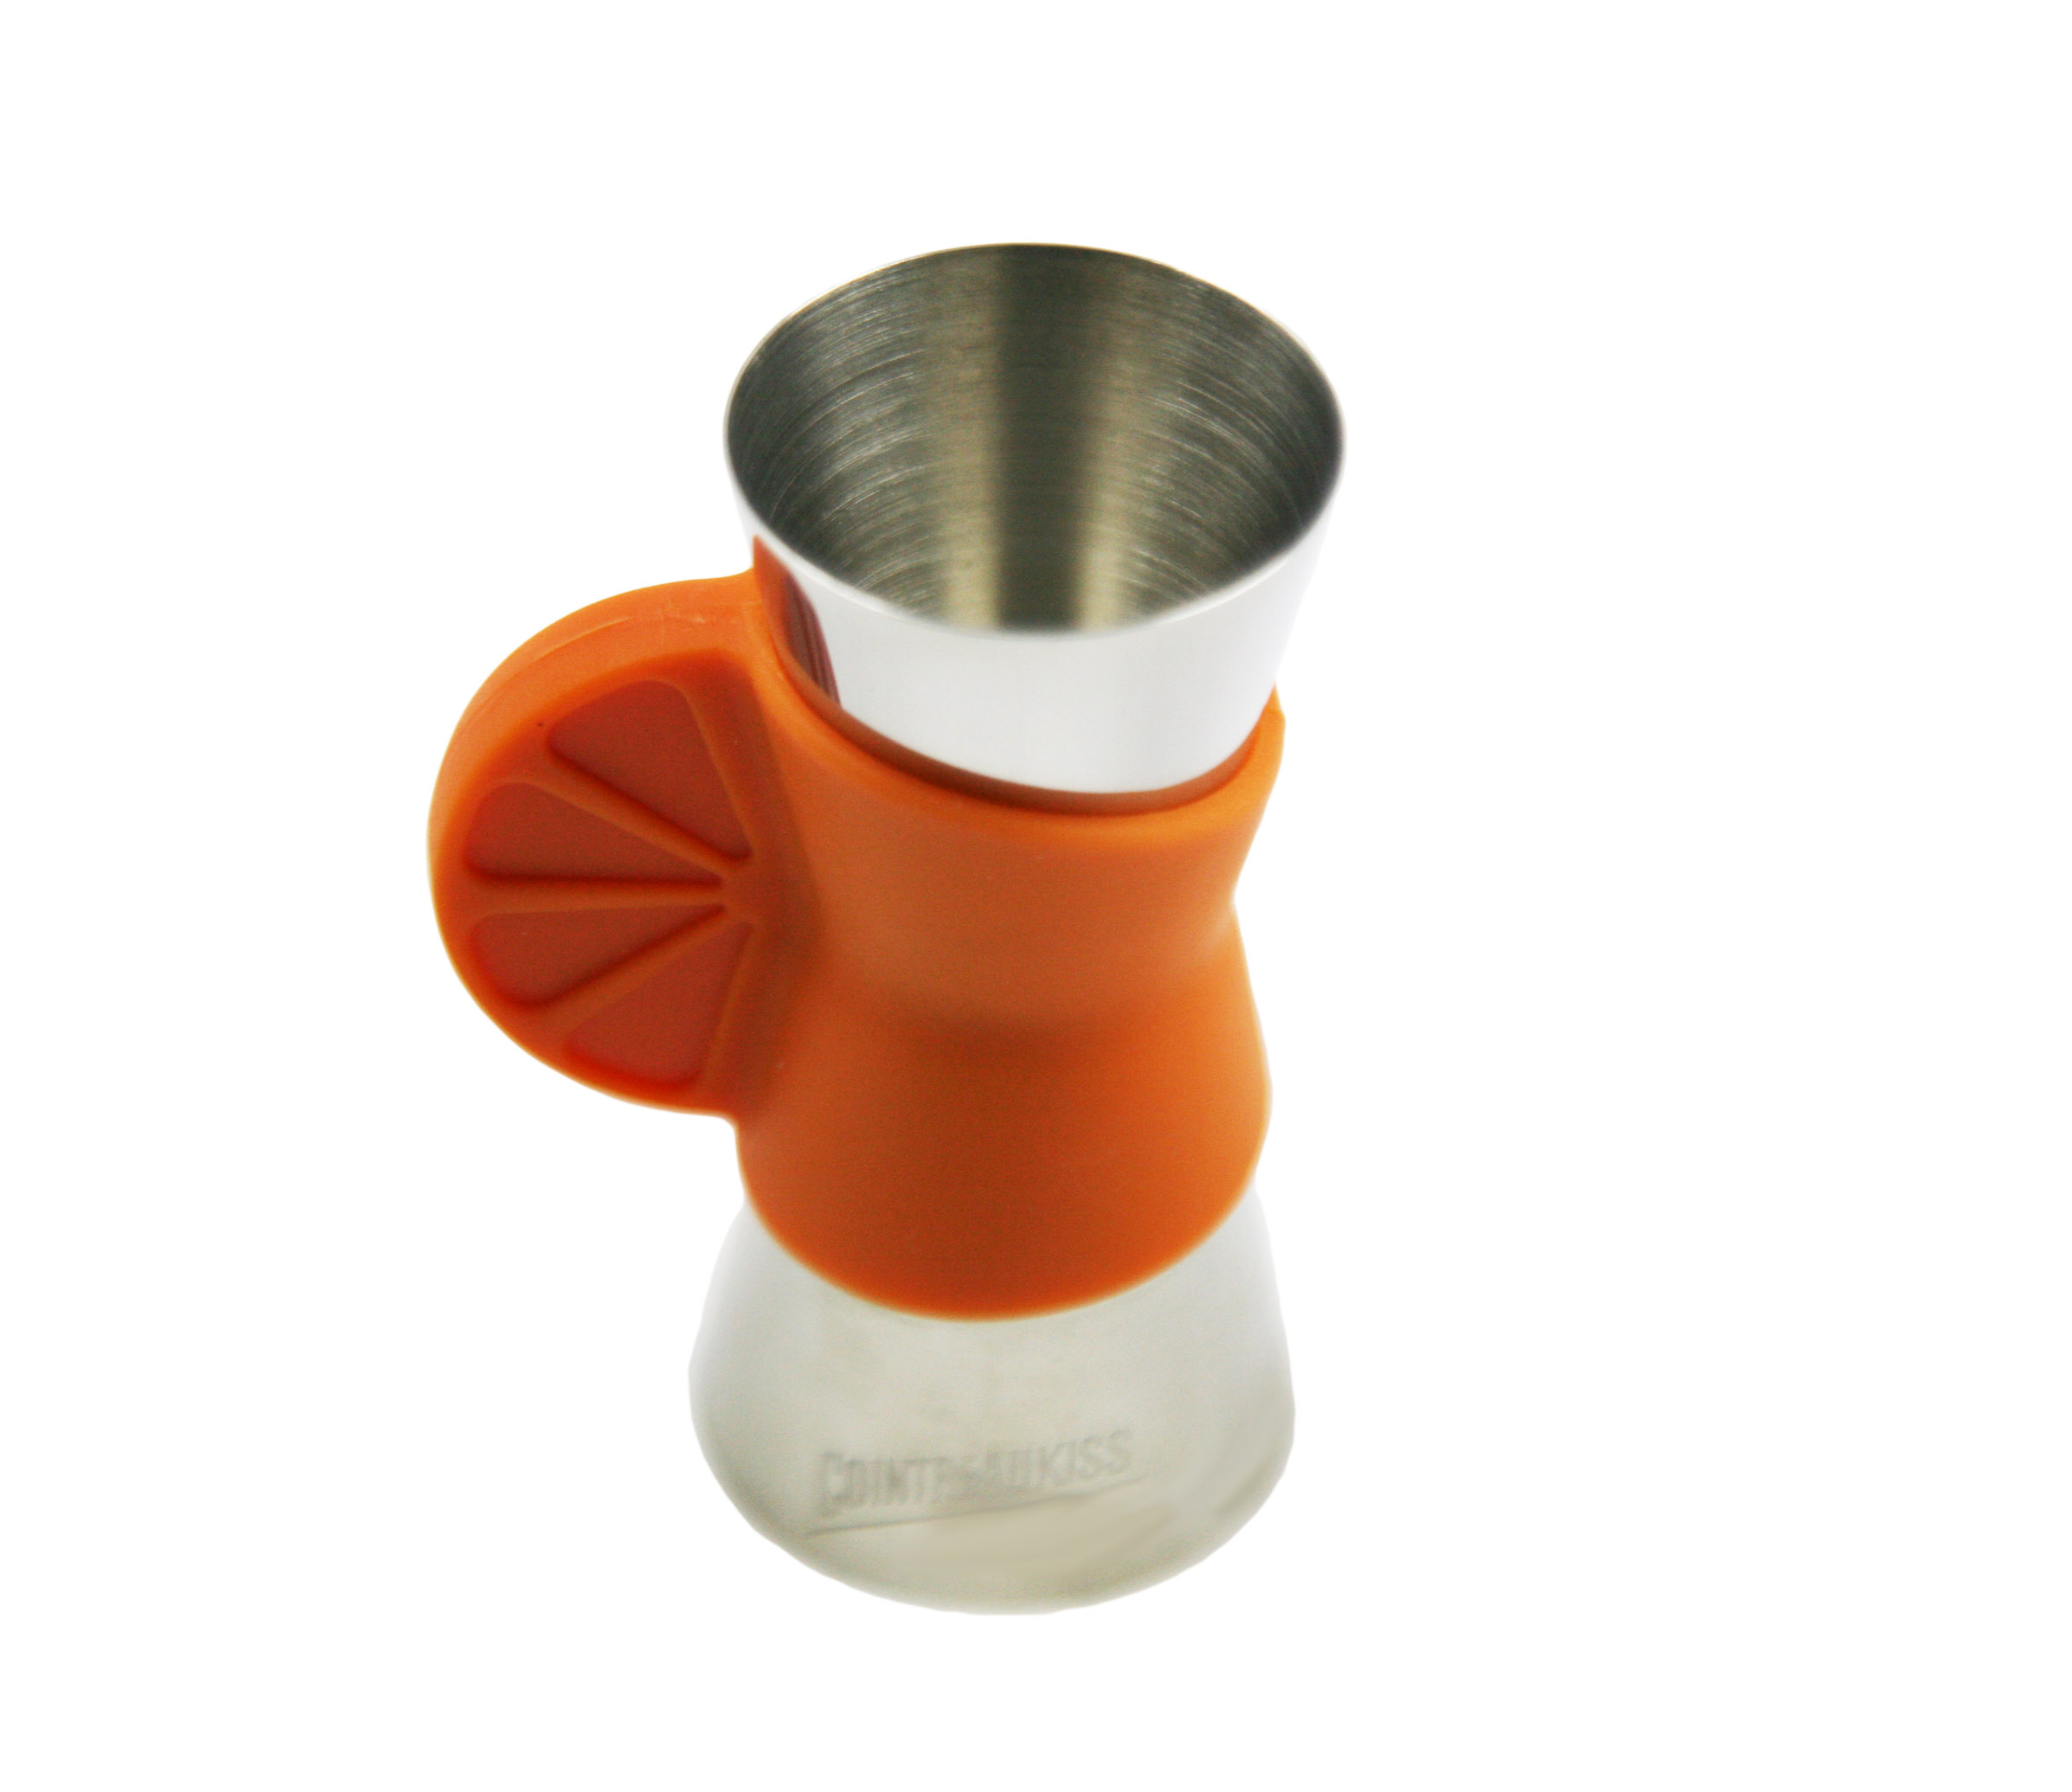 Novo design aperto de mão laranja durável Bar Copo de medição de aço inoxidável jigger Bartools EB-T21